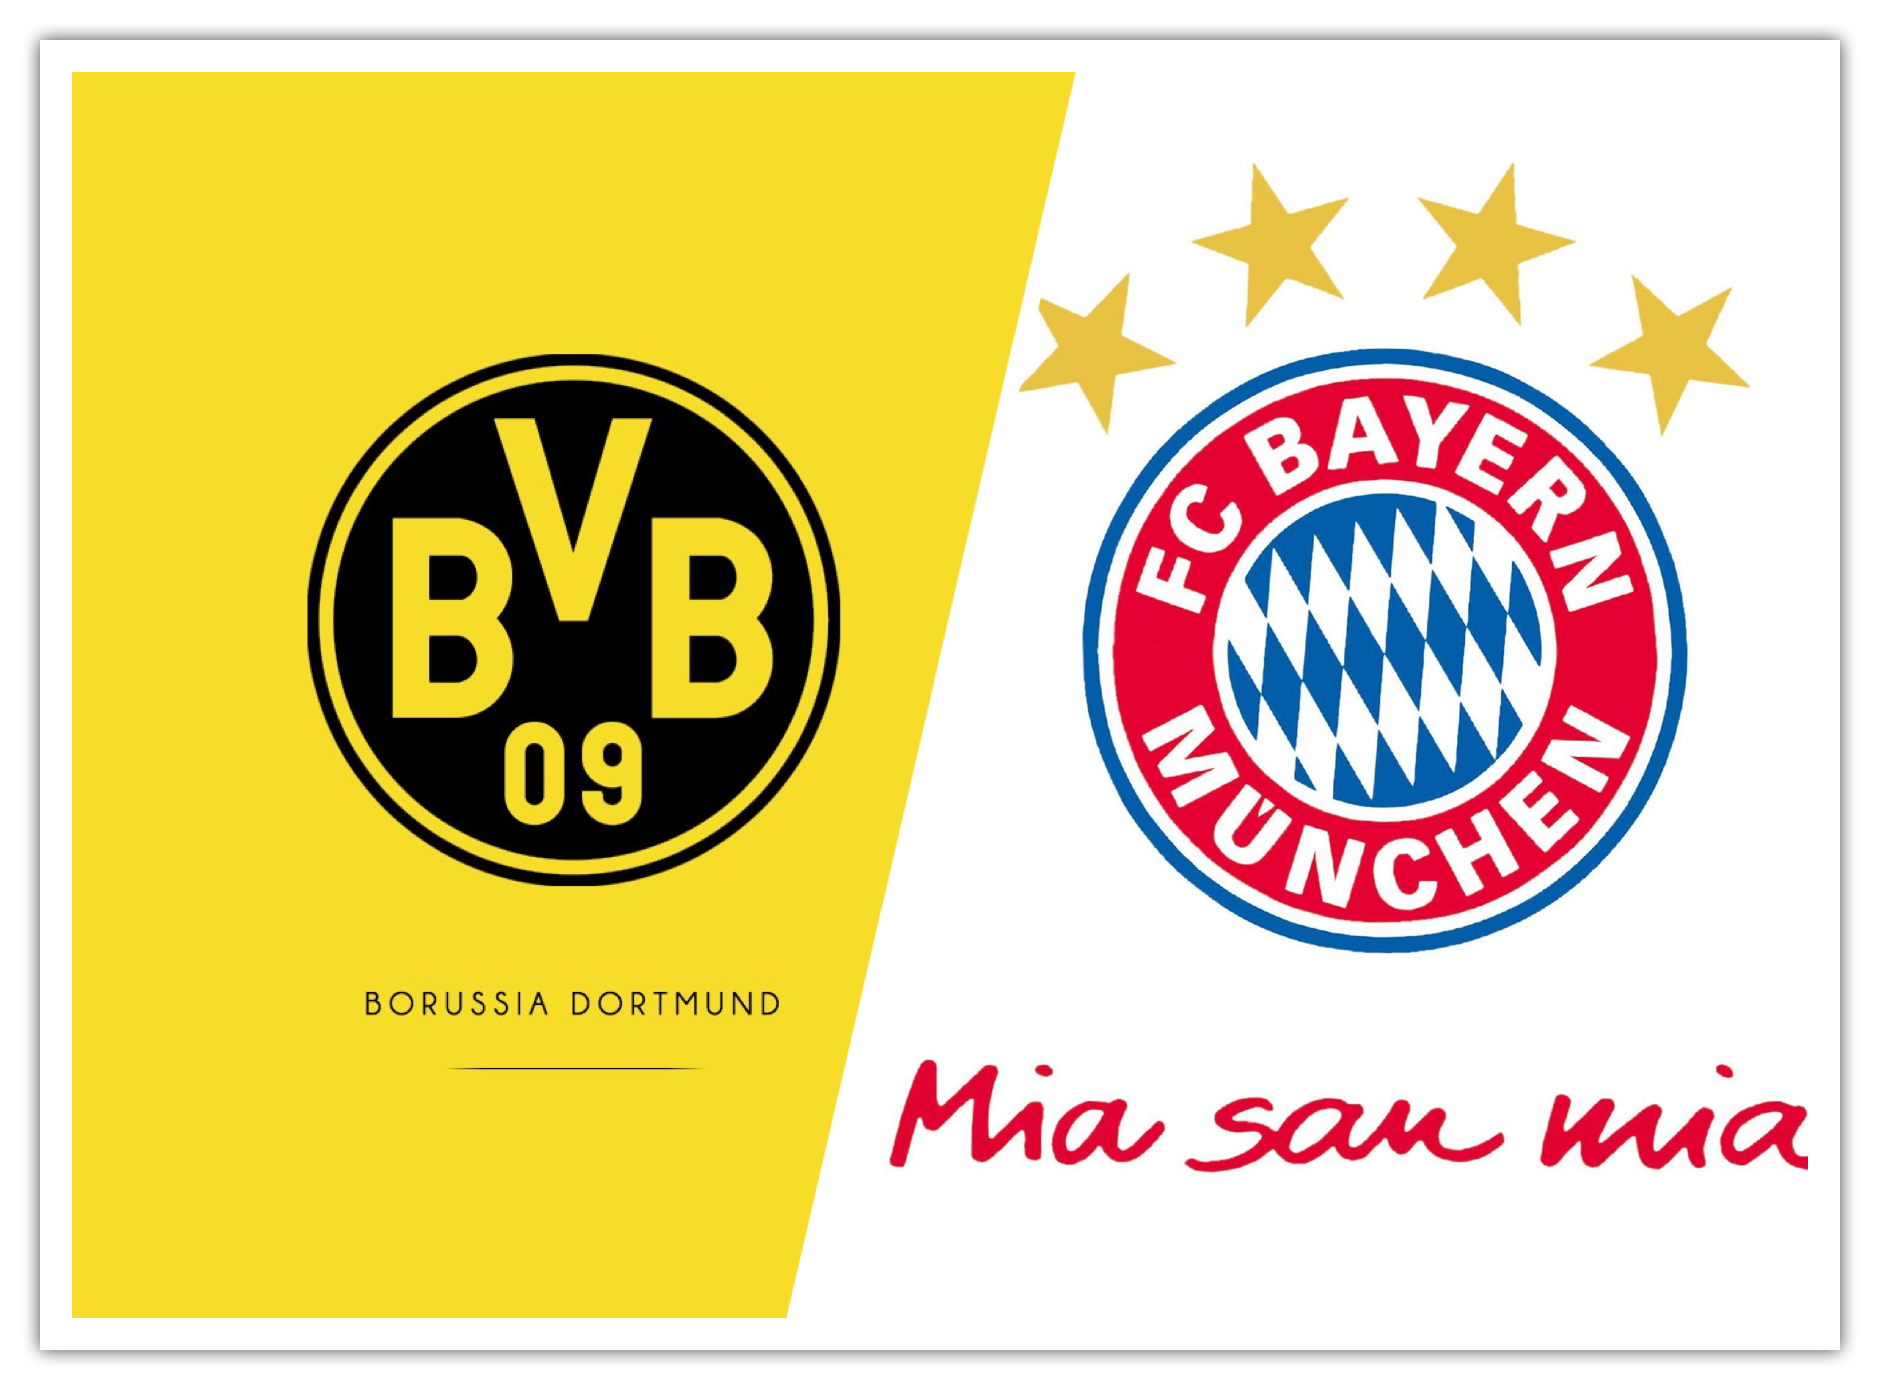 拜仁慕尼黑logo高清图片